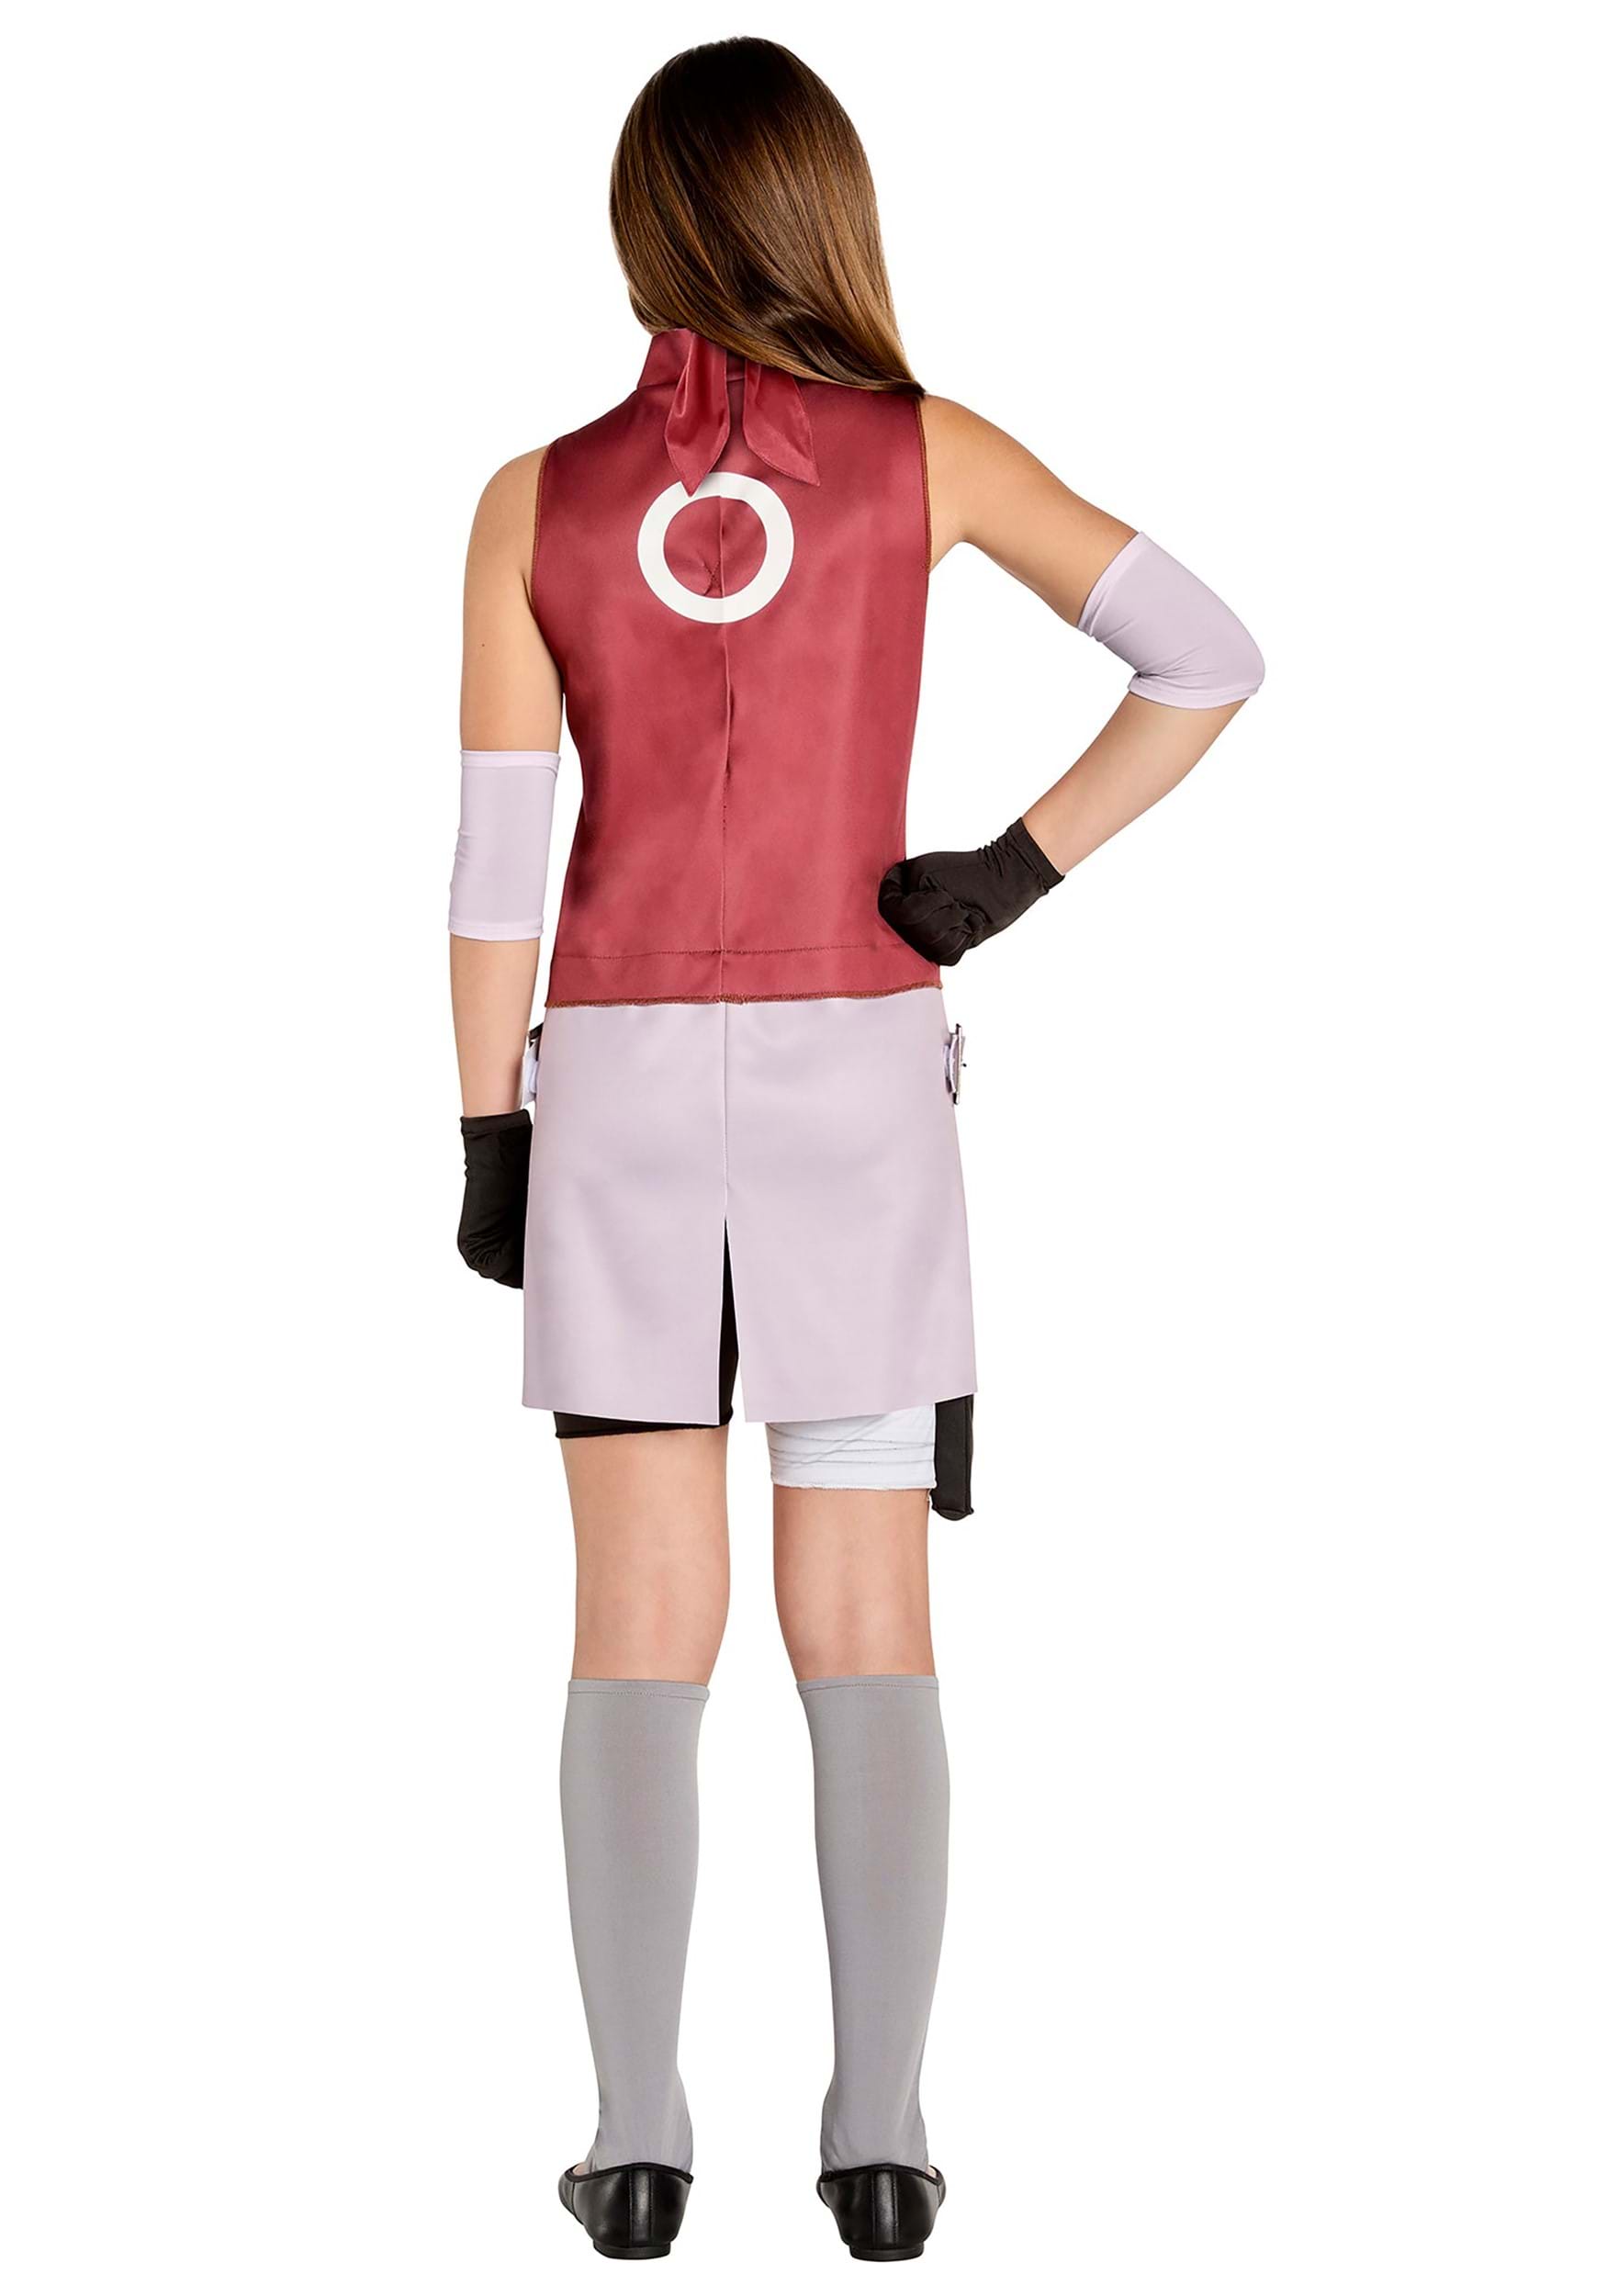 Naruto Shippuden Sakura Costume For Girls , Ninja Costume